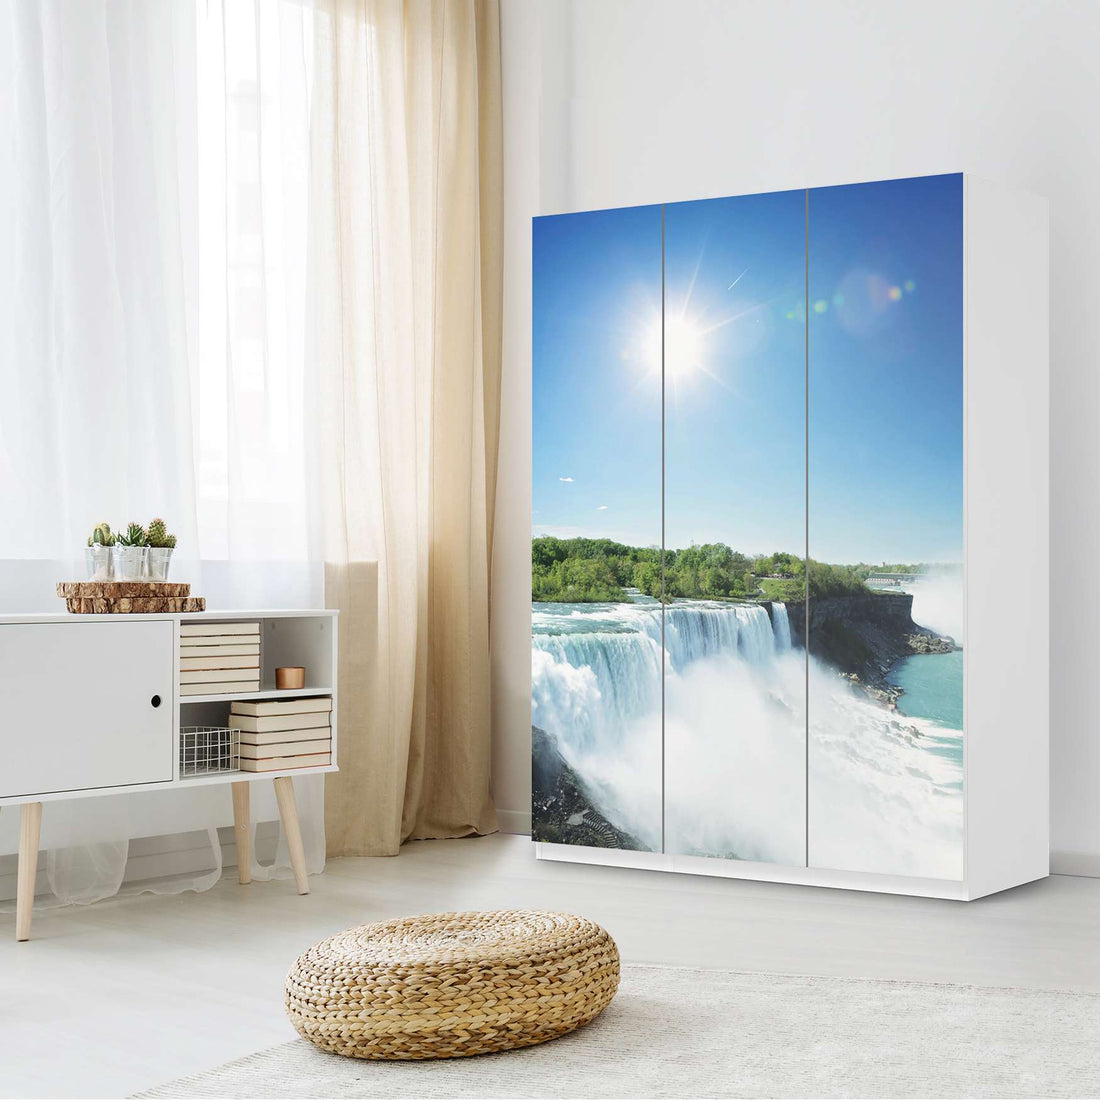 Folie für Möbel Niagara Falls - IKEA Pax Schrank 201 cm Höhe - 3 Türen - Schlafzimmer